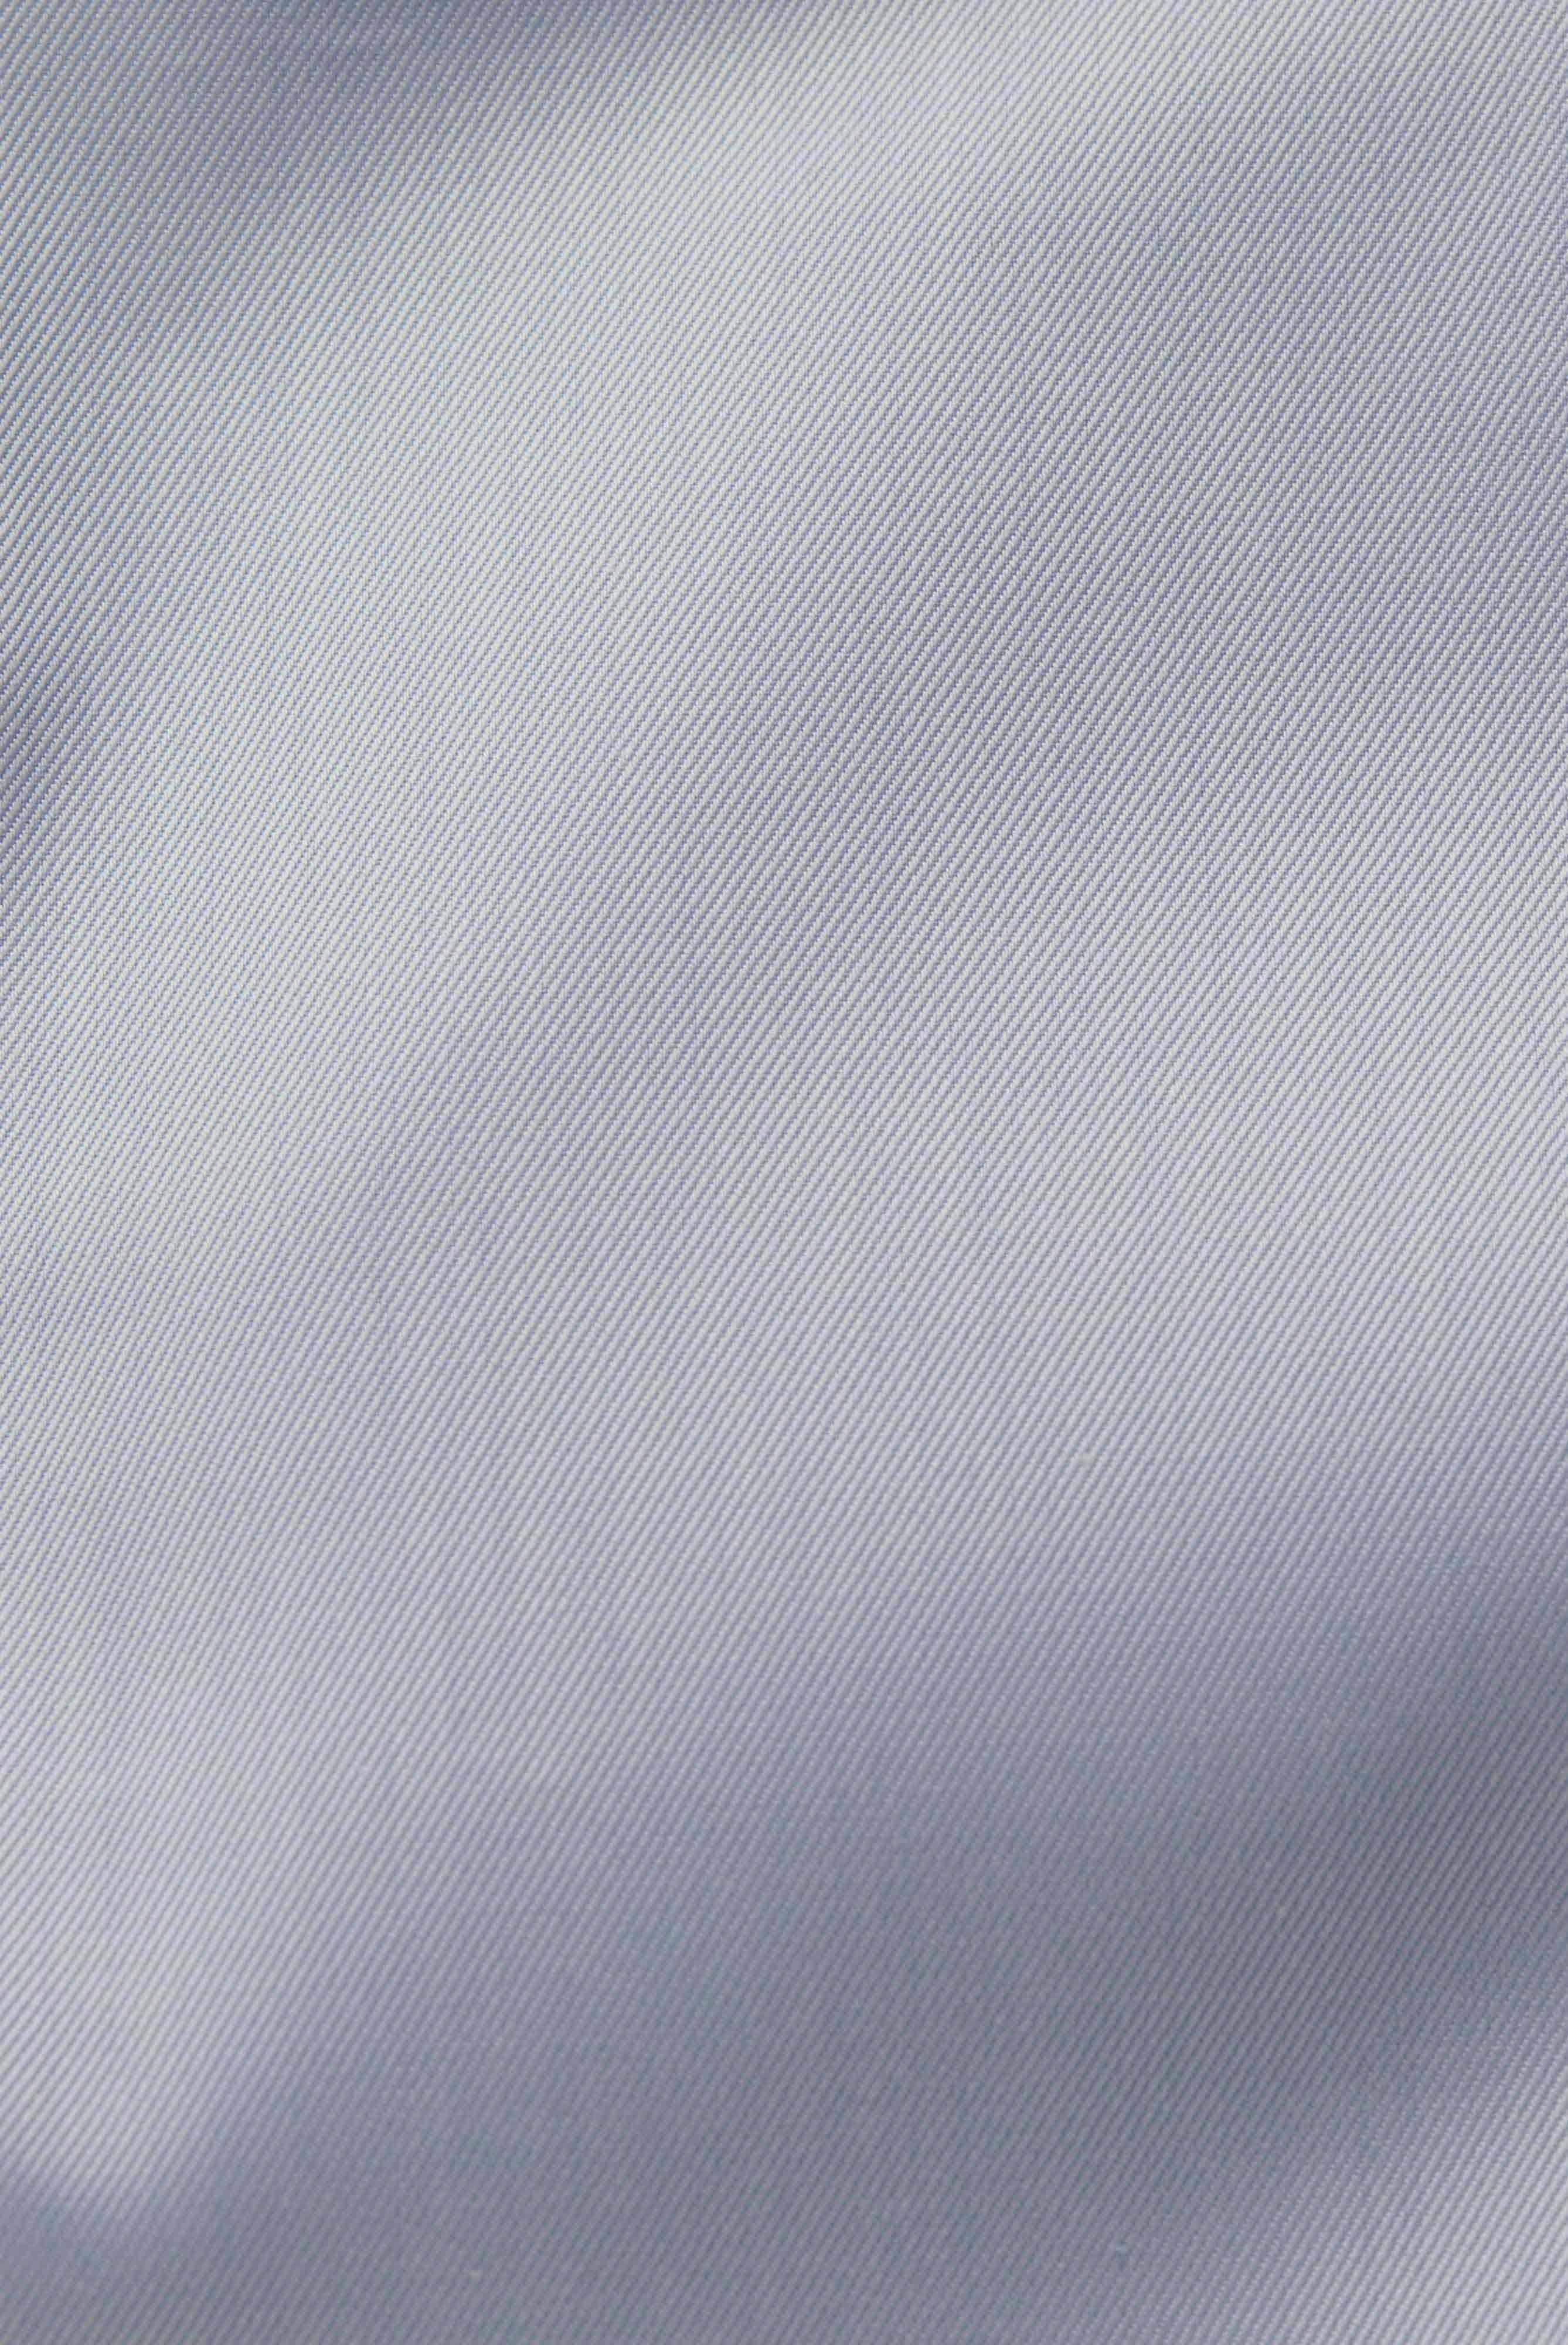 Bügelleichte Hemden+Bügelfreies Twill Hemd Tailor Fit+20.2020.BQ.132241.720.41